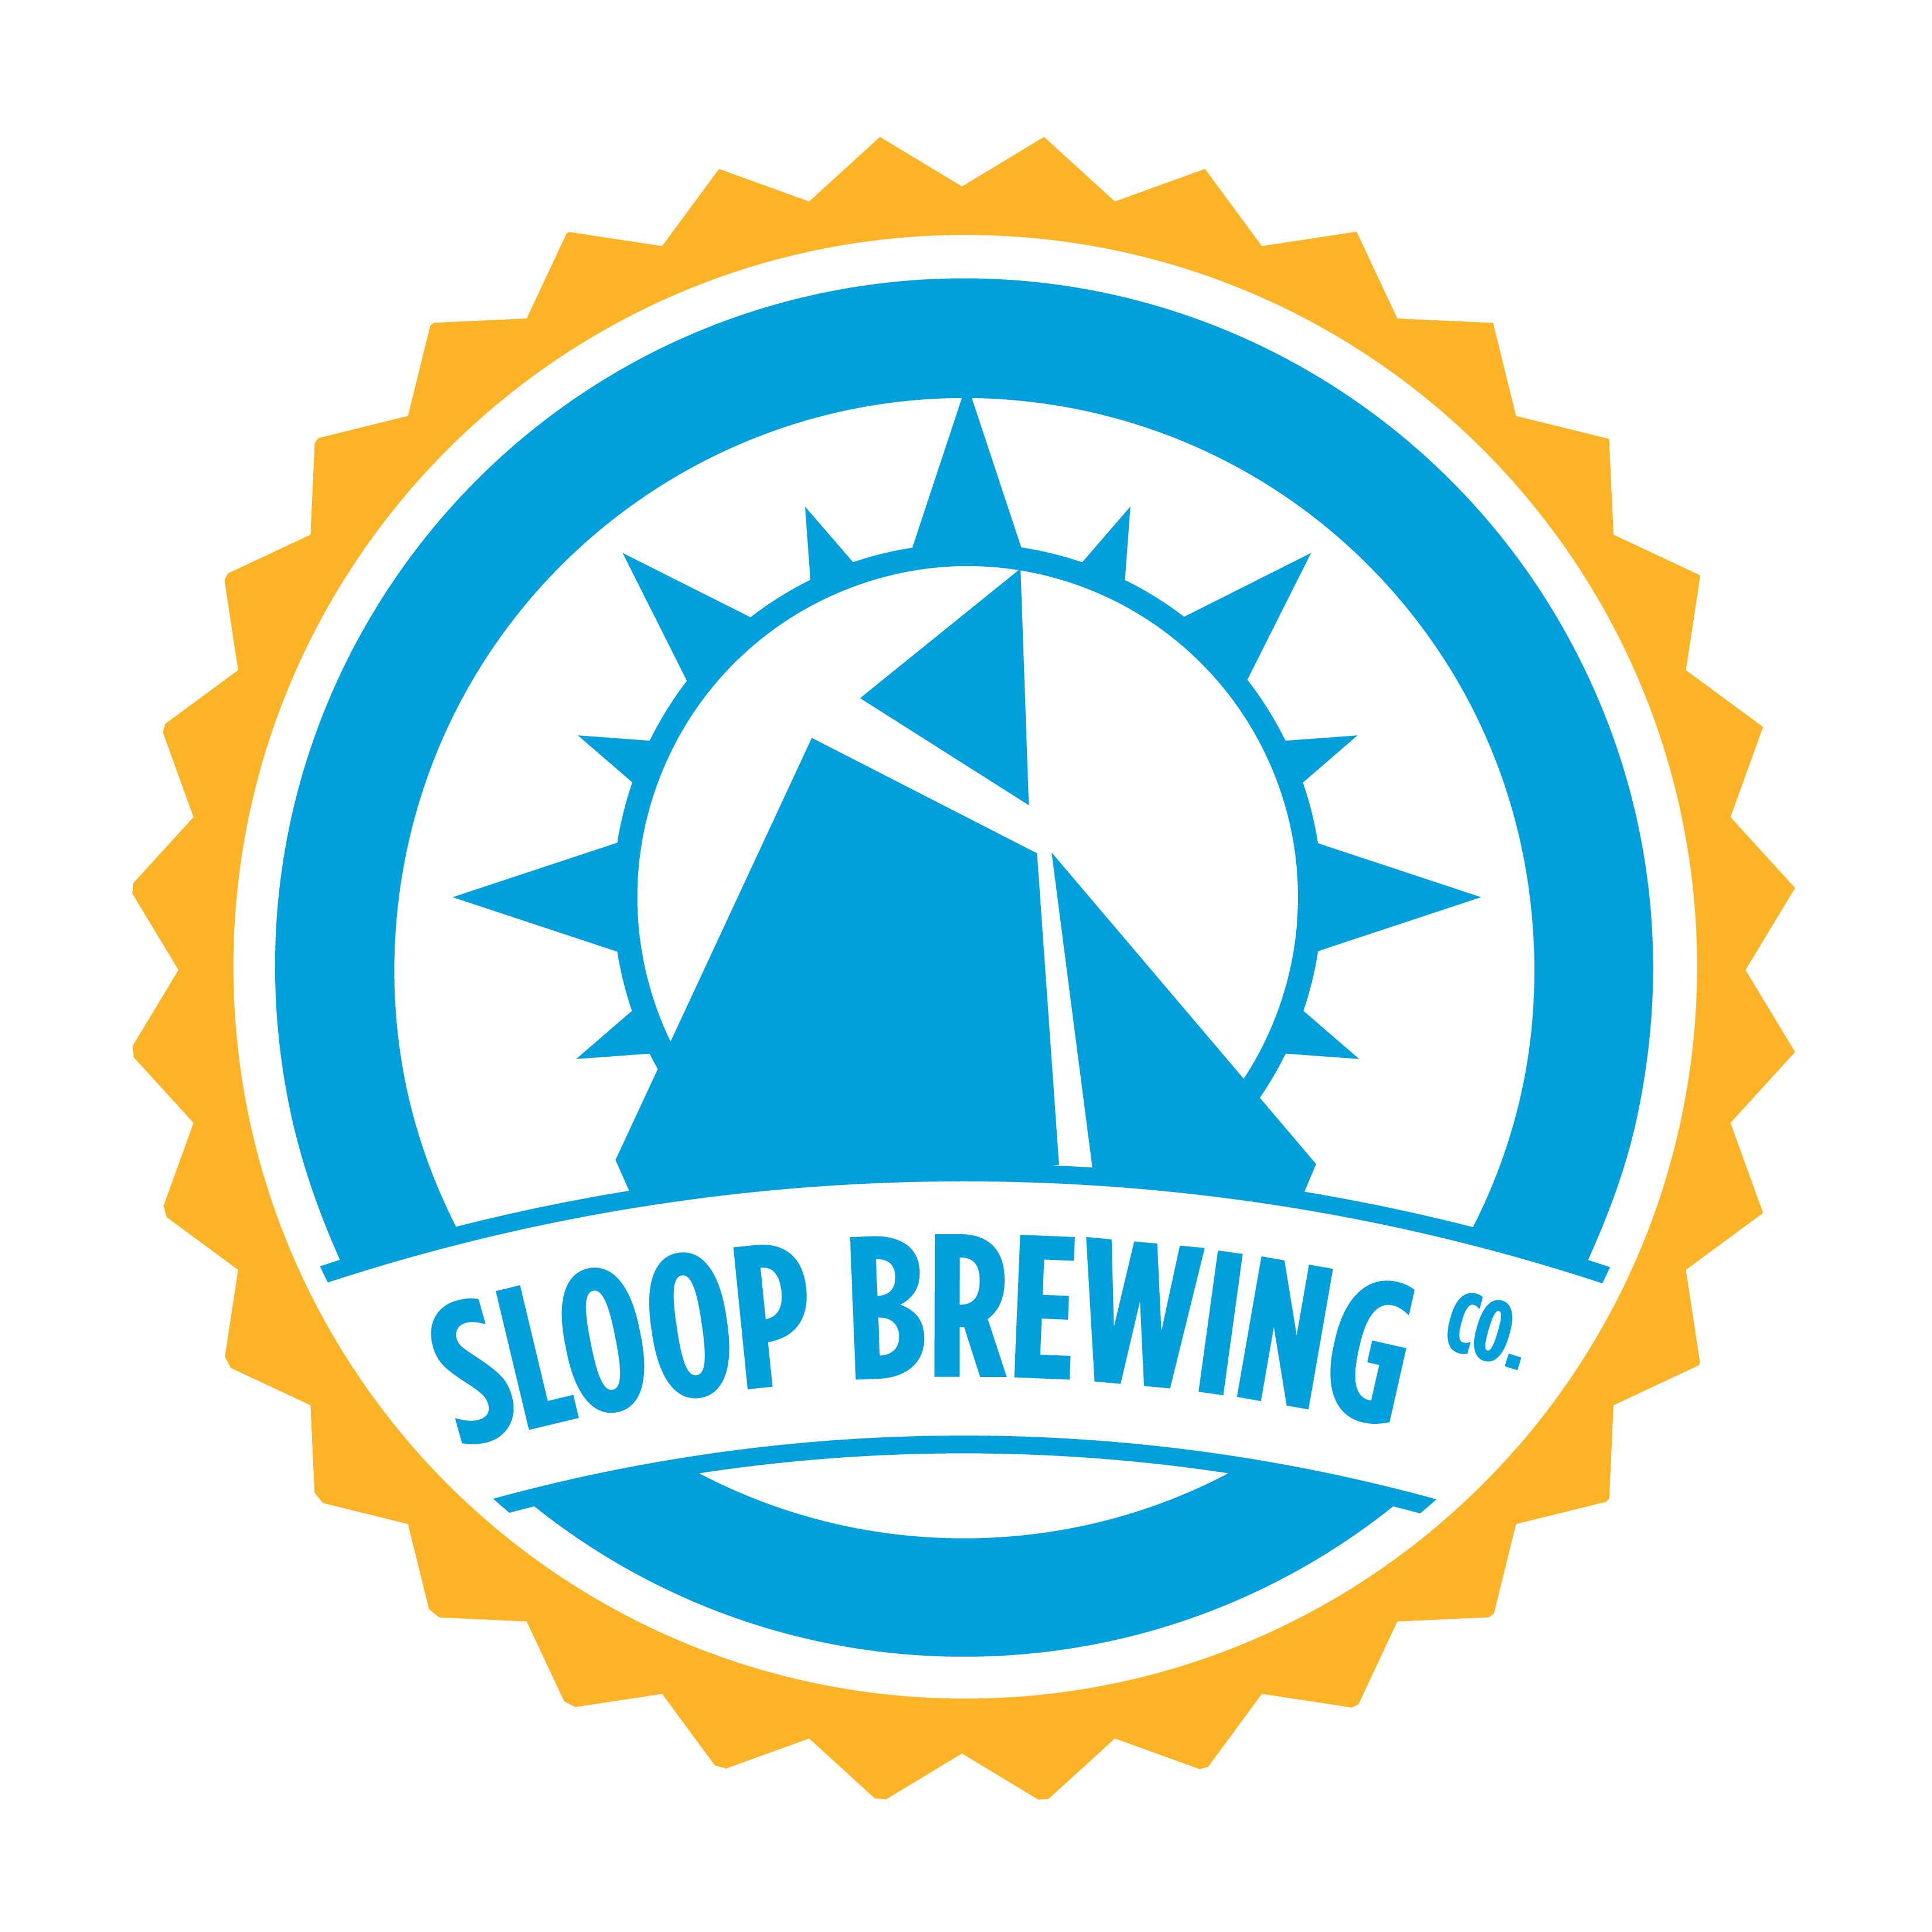 Sloop Brewing Co. logo